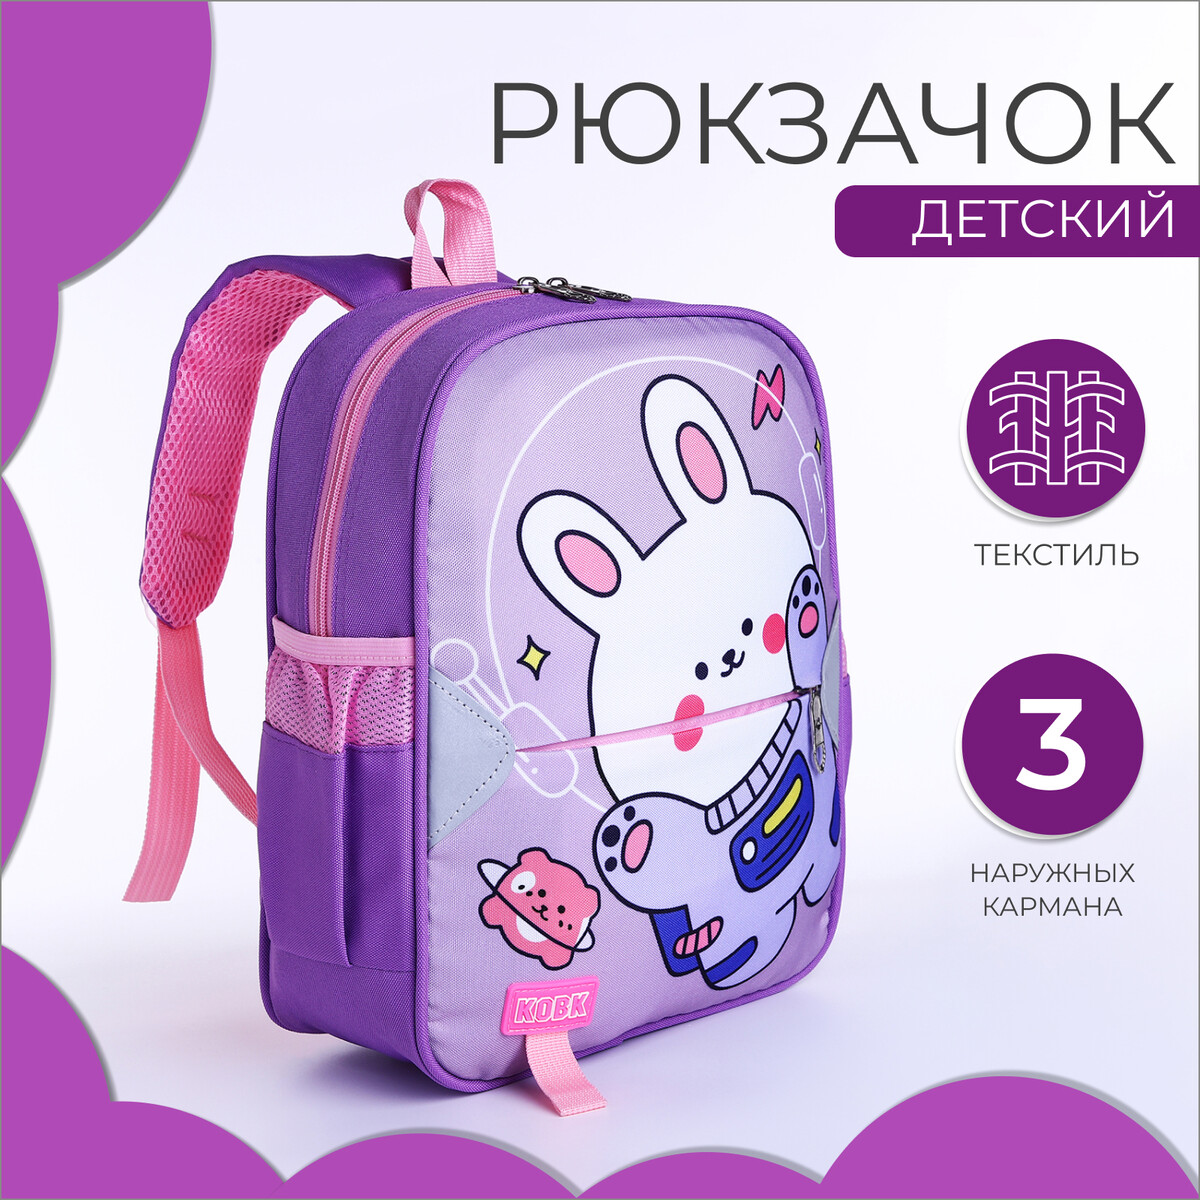 Рюкзак детский на молнии, 3 наружных кармана, цвет сиреневый рюкзак на молнии 4 наружных кармана сиреневый